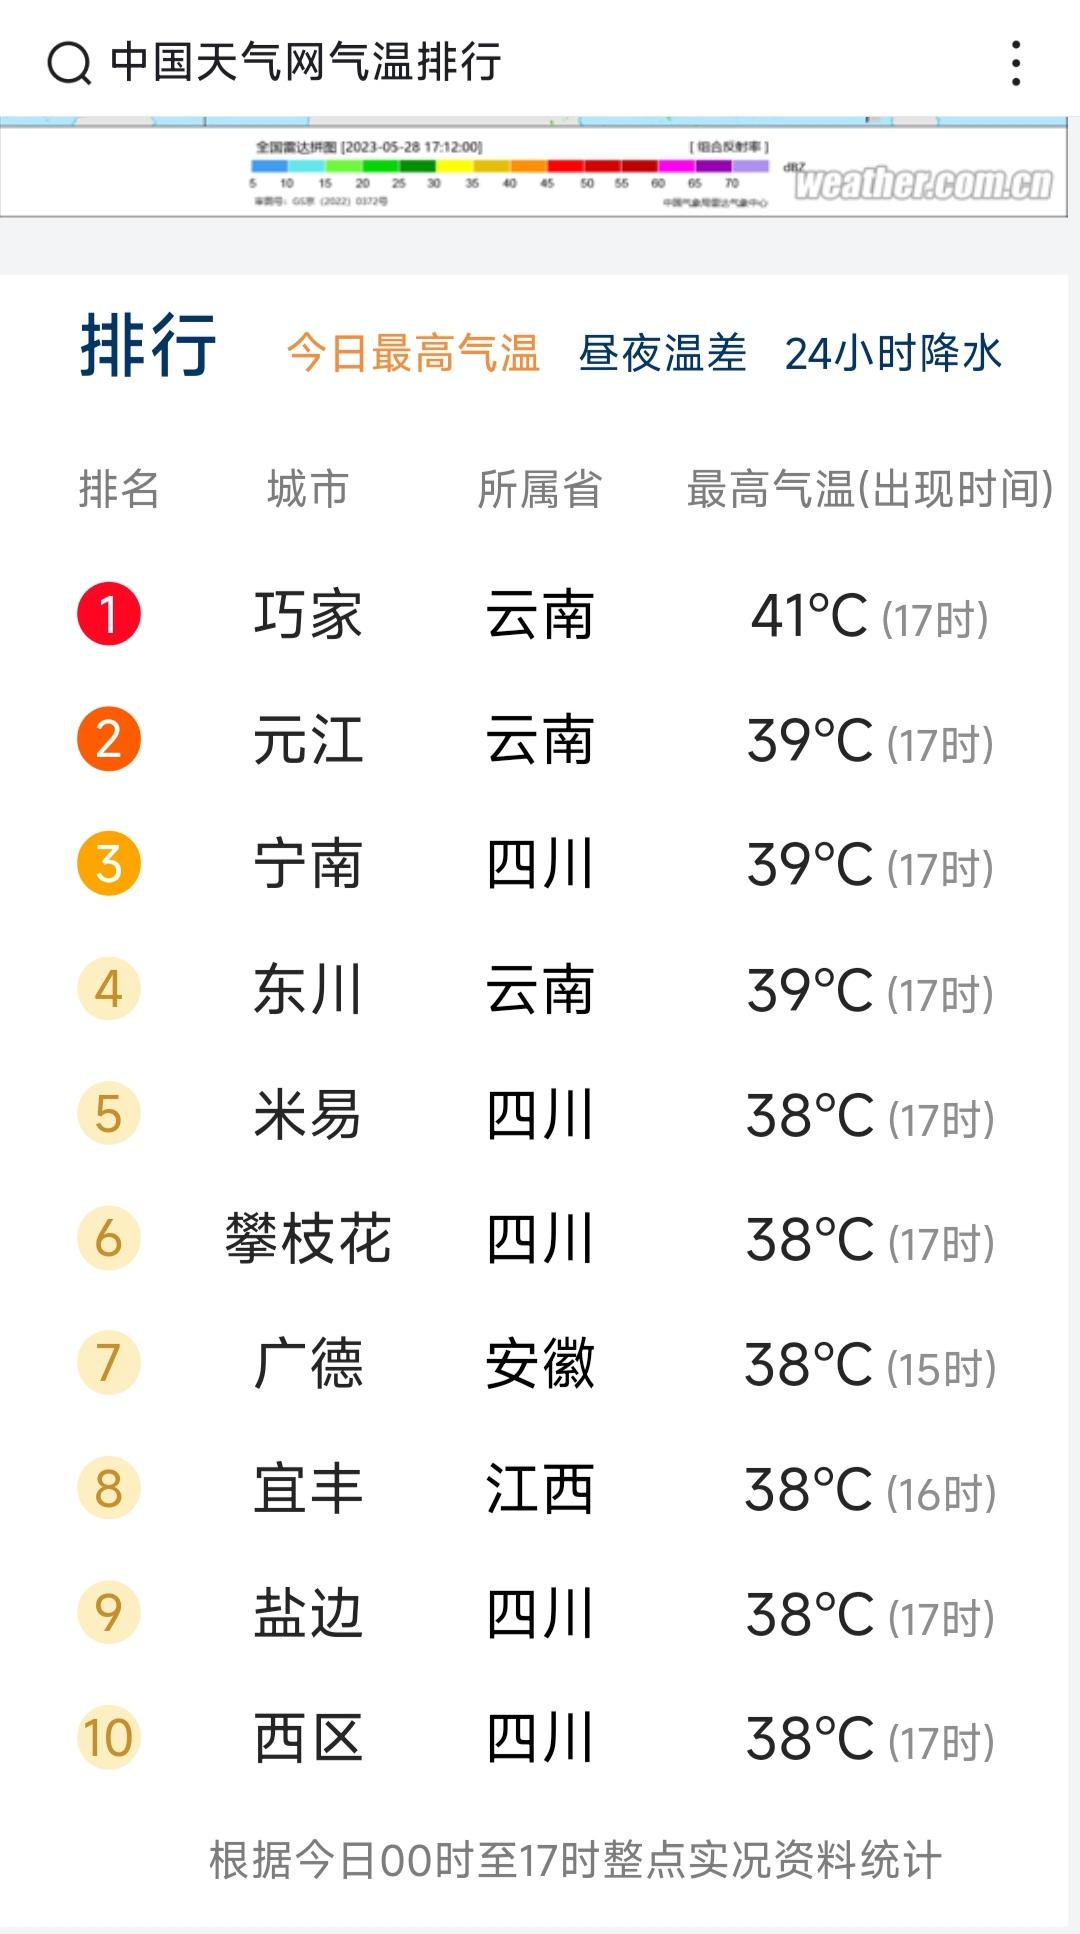 ↑中国天气网气温排行